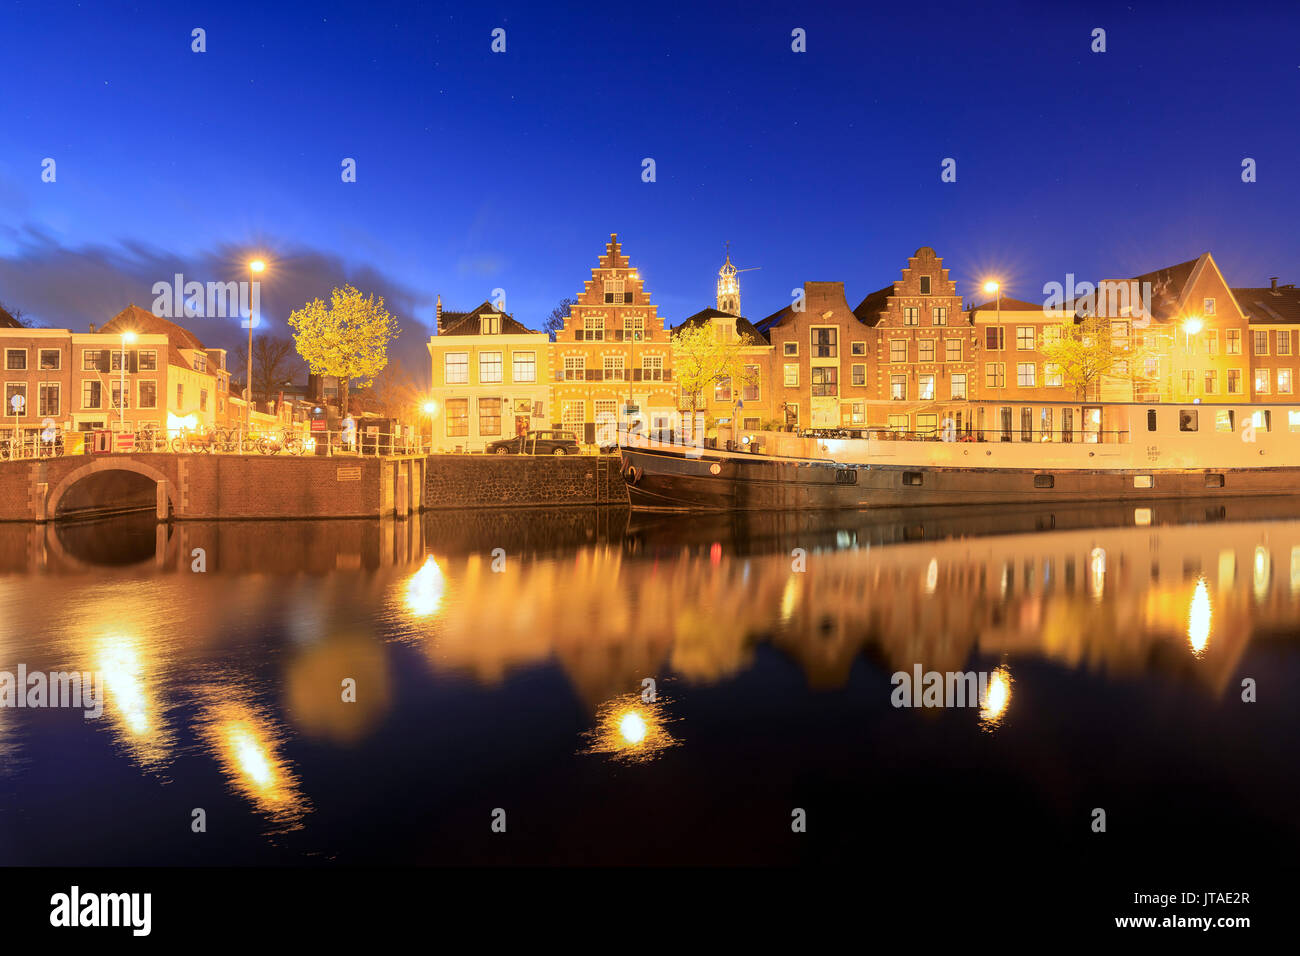 Dämmerung leuchtet auf typische Häuser und Brücke in einem Kanal des Flusses Spaarne, Haarlem, Nord Holland, Niederlande nieder Stockfoto